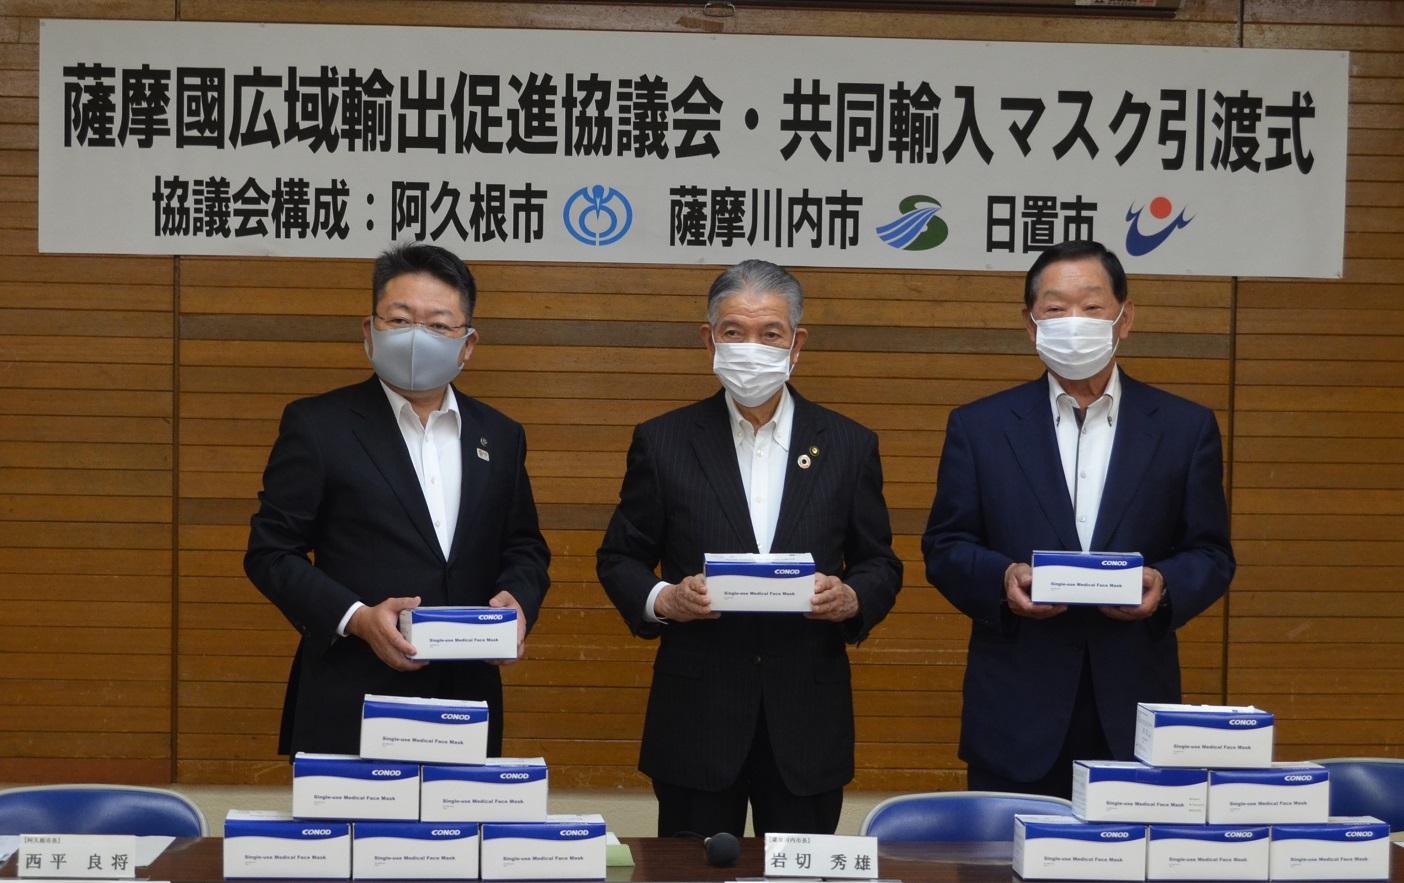 西平市長と薩摩川内市市長と日置市市長がそれぞれにマスクが入った箱を持っている写真